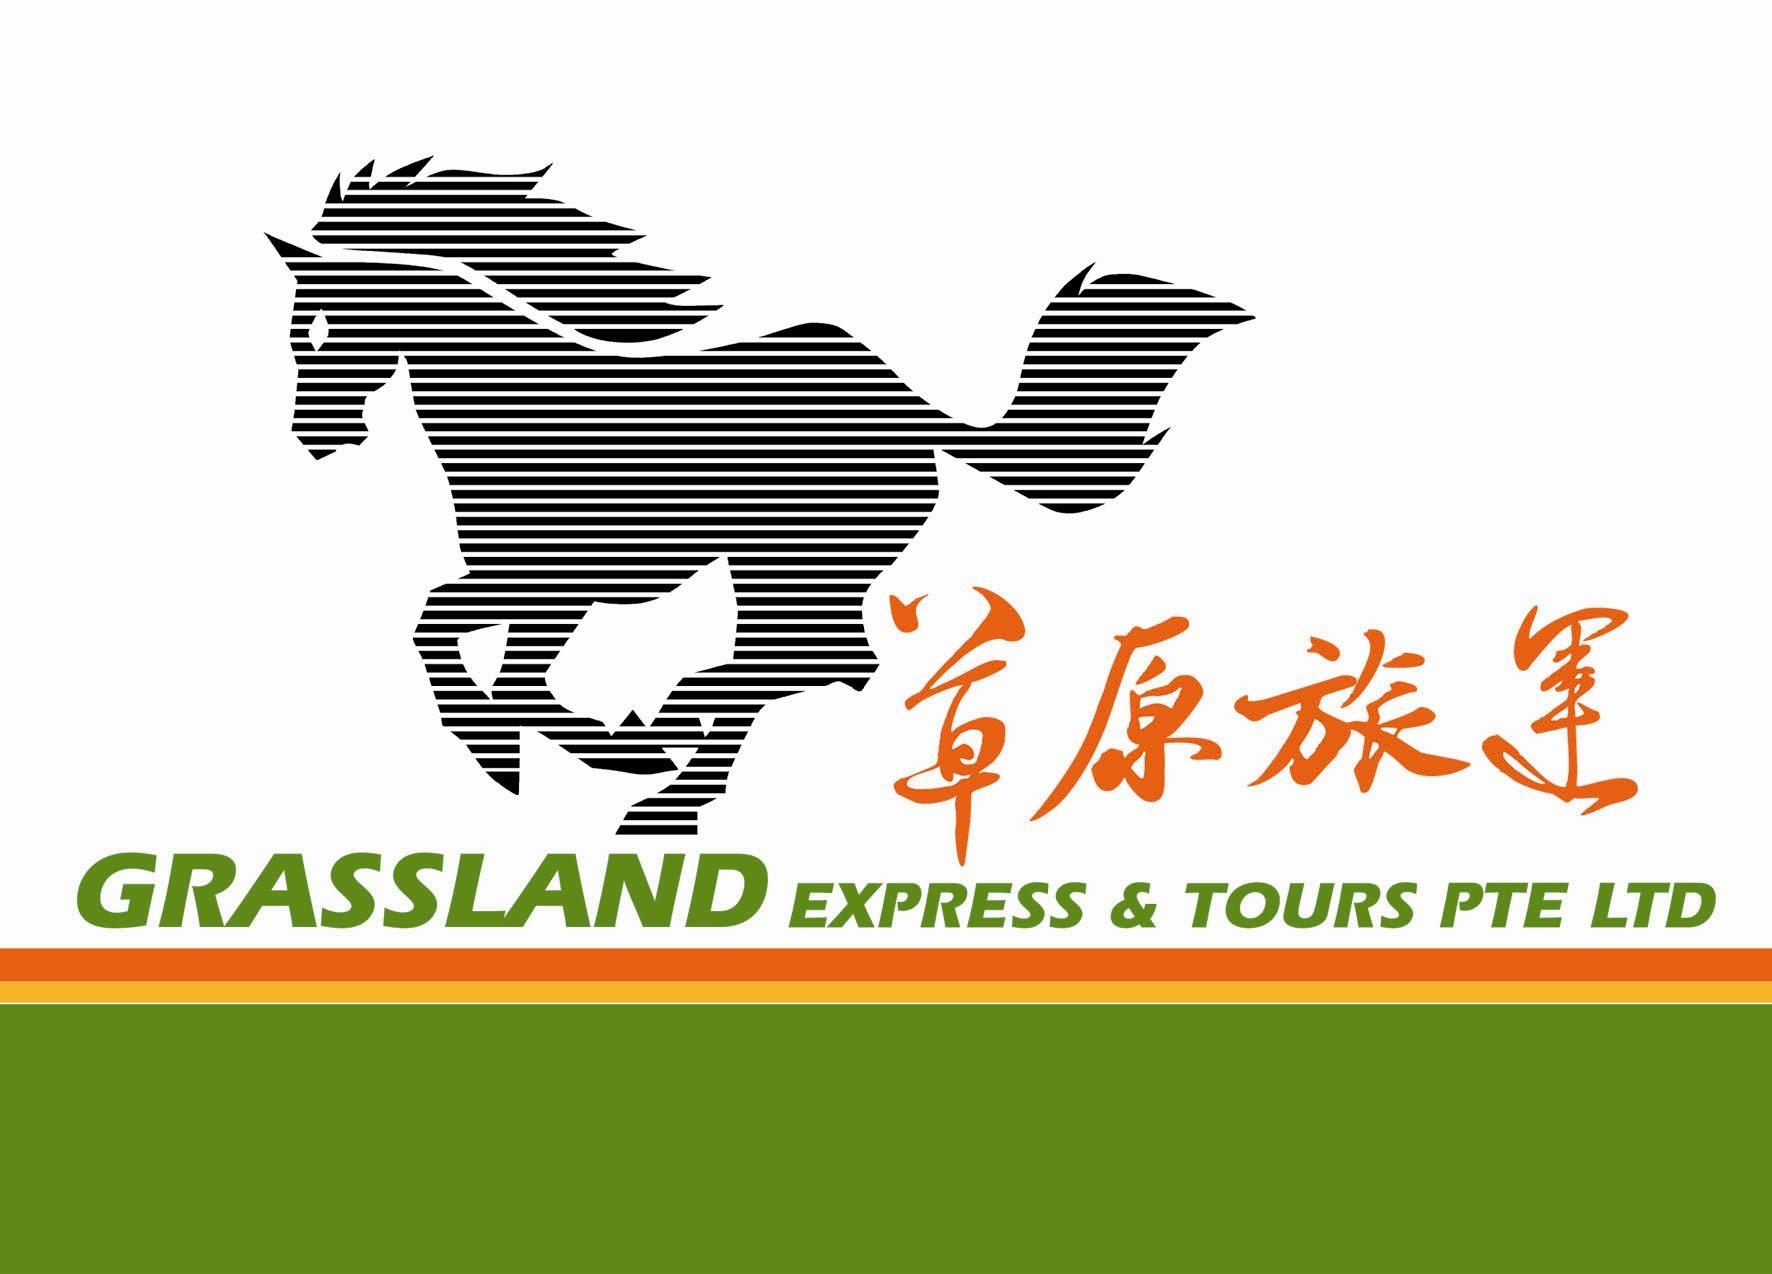 Grassland Logo - grasslandexpress